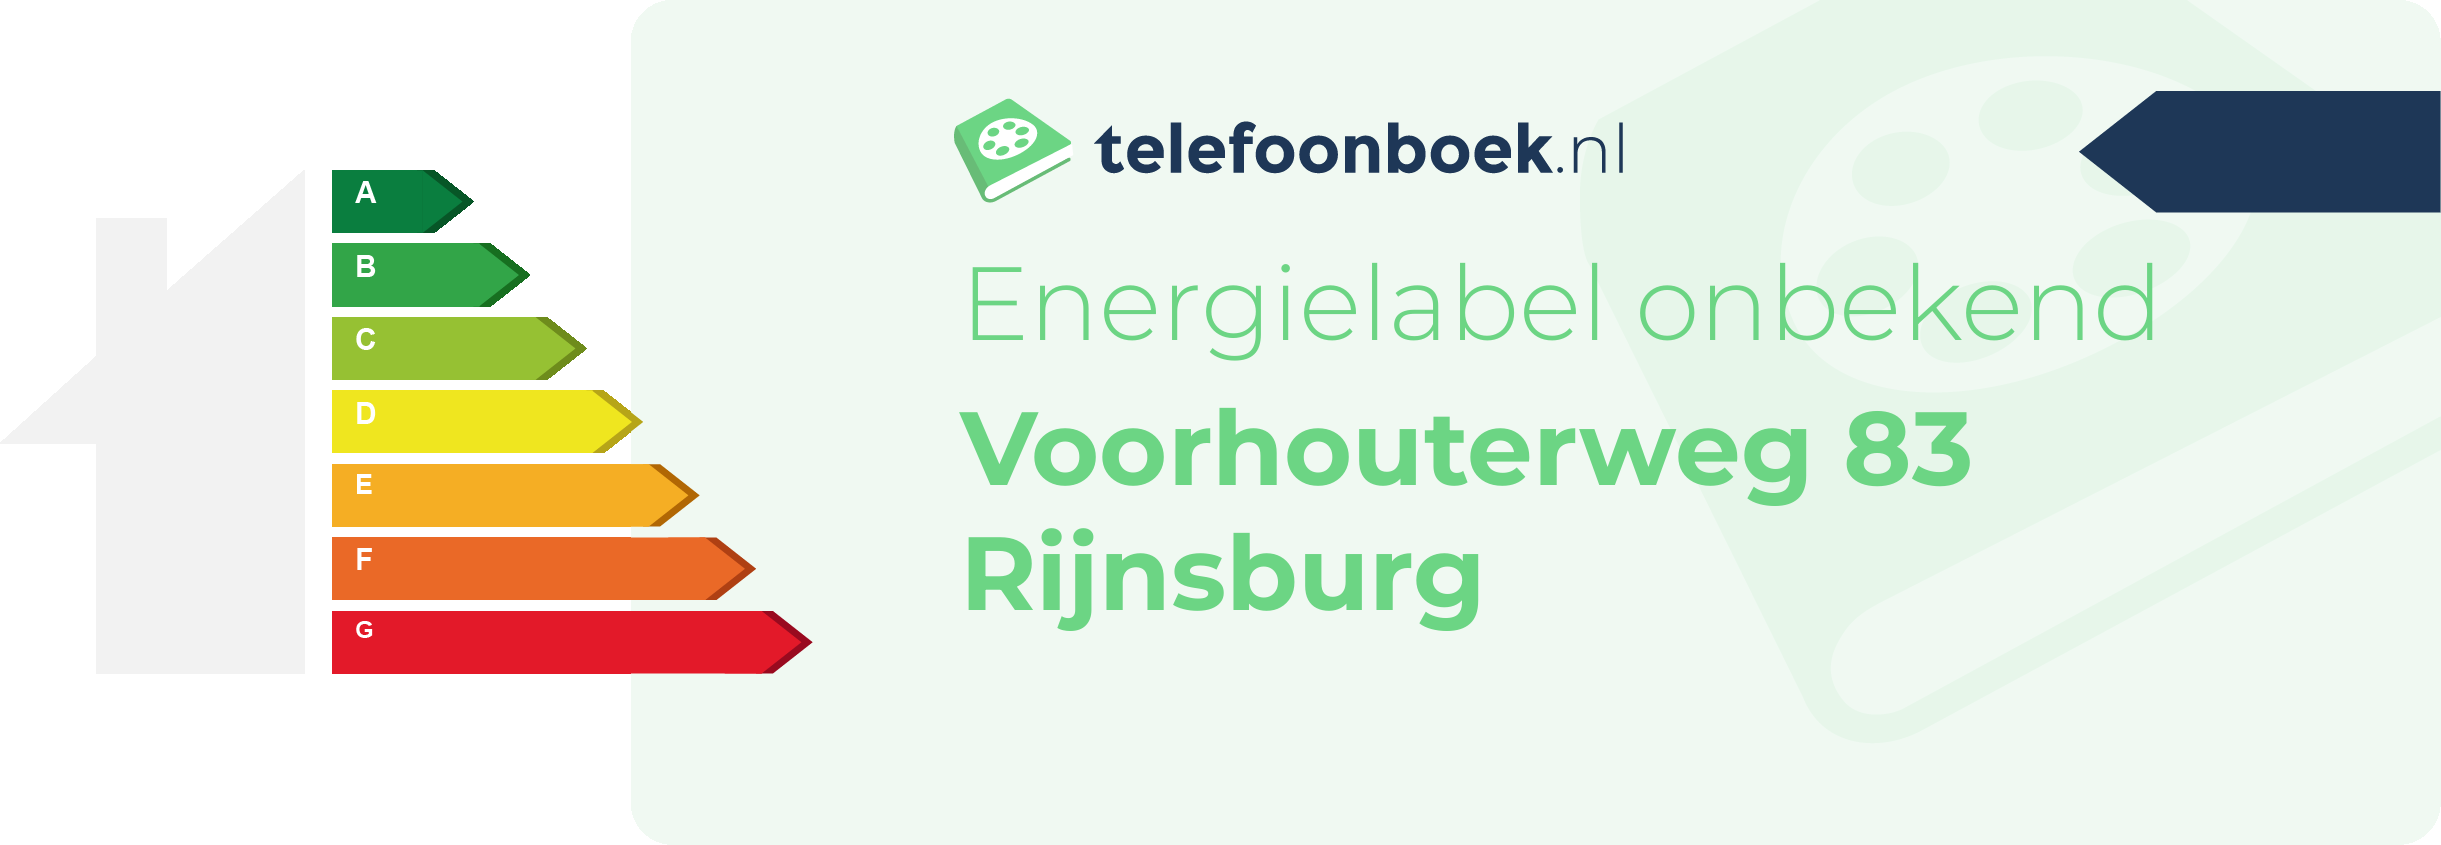 Energielabel Voorhouterweg 83 Rijnsburg